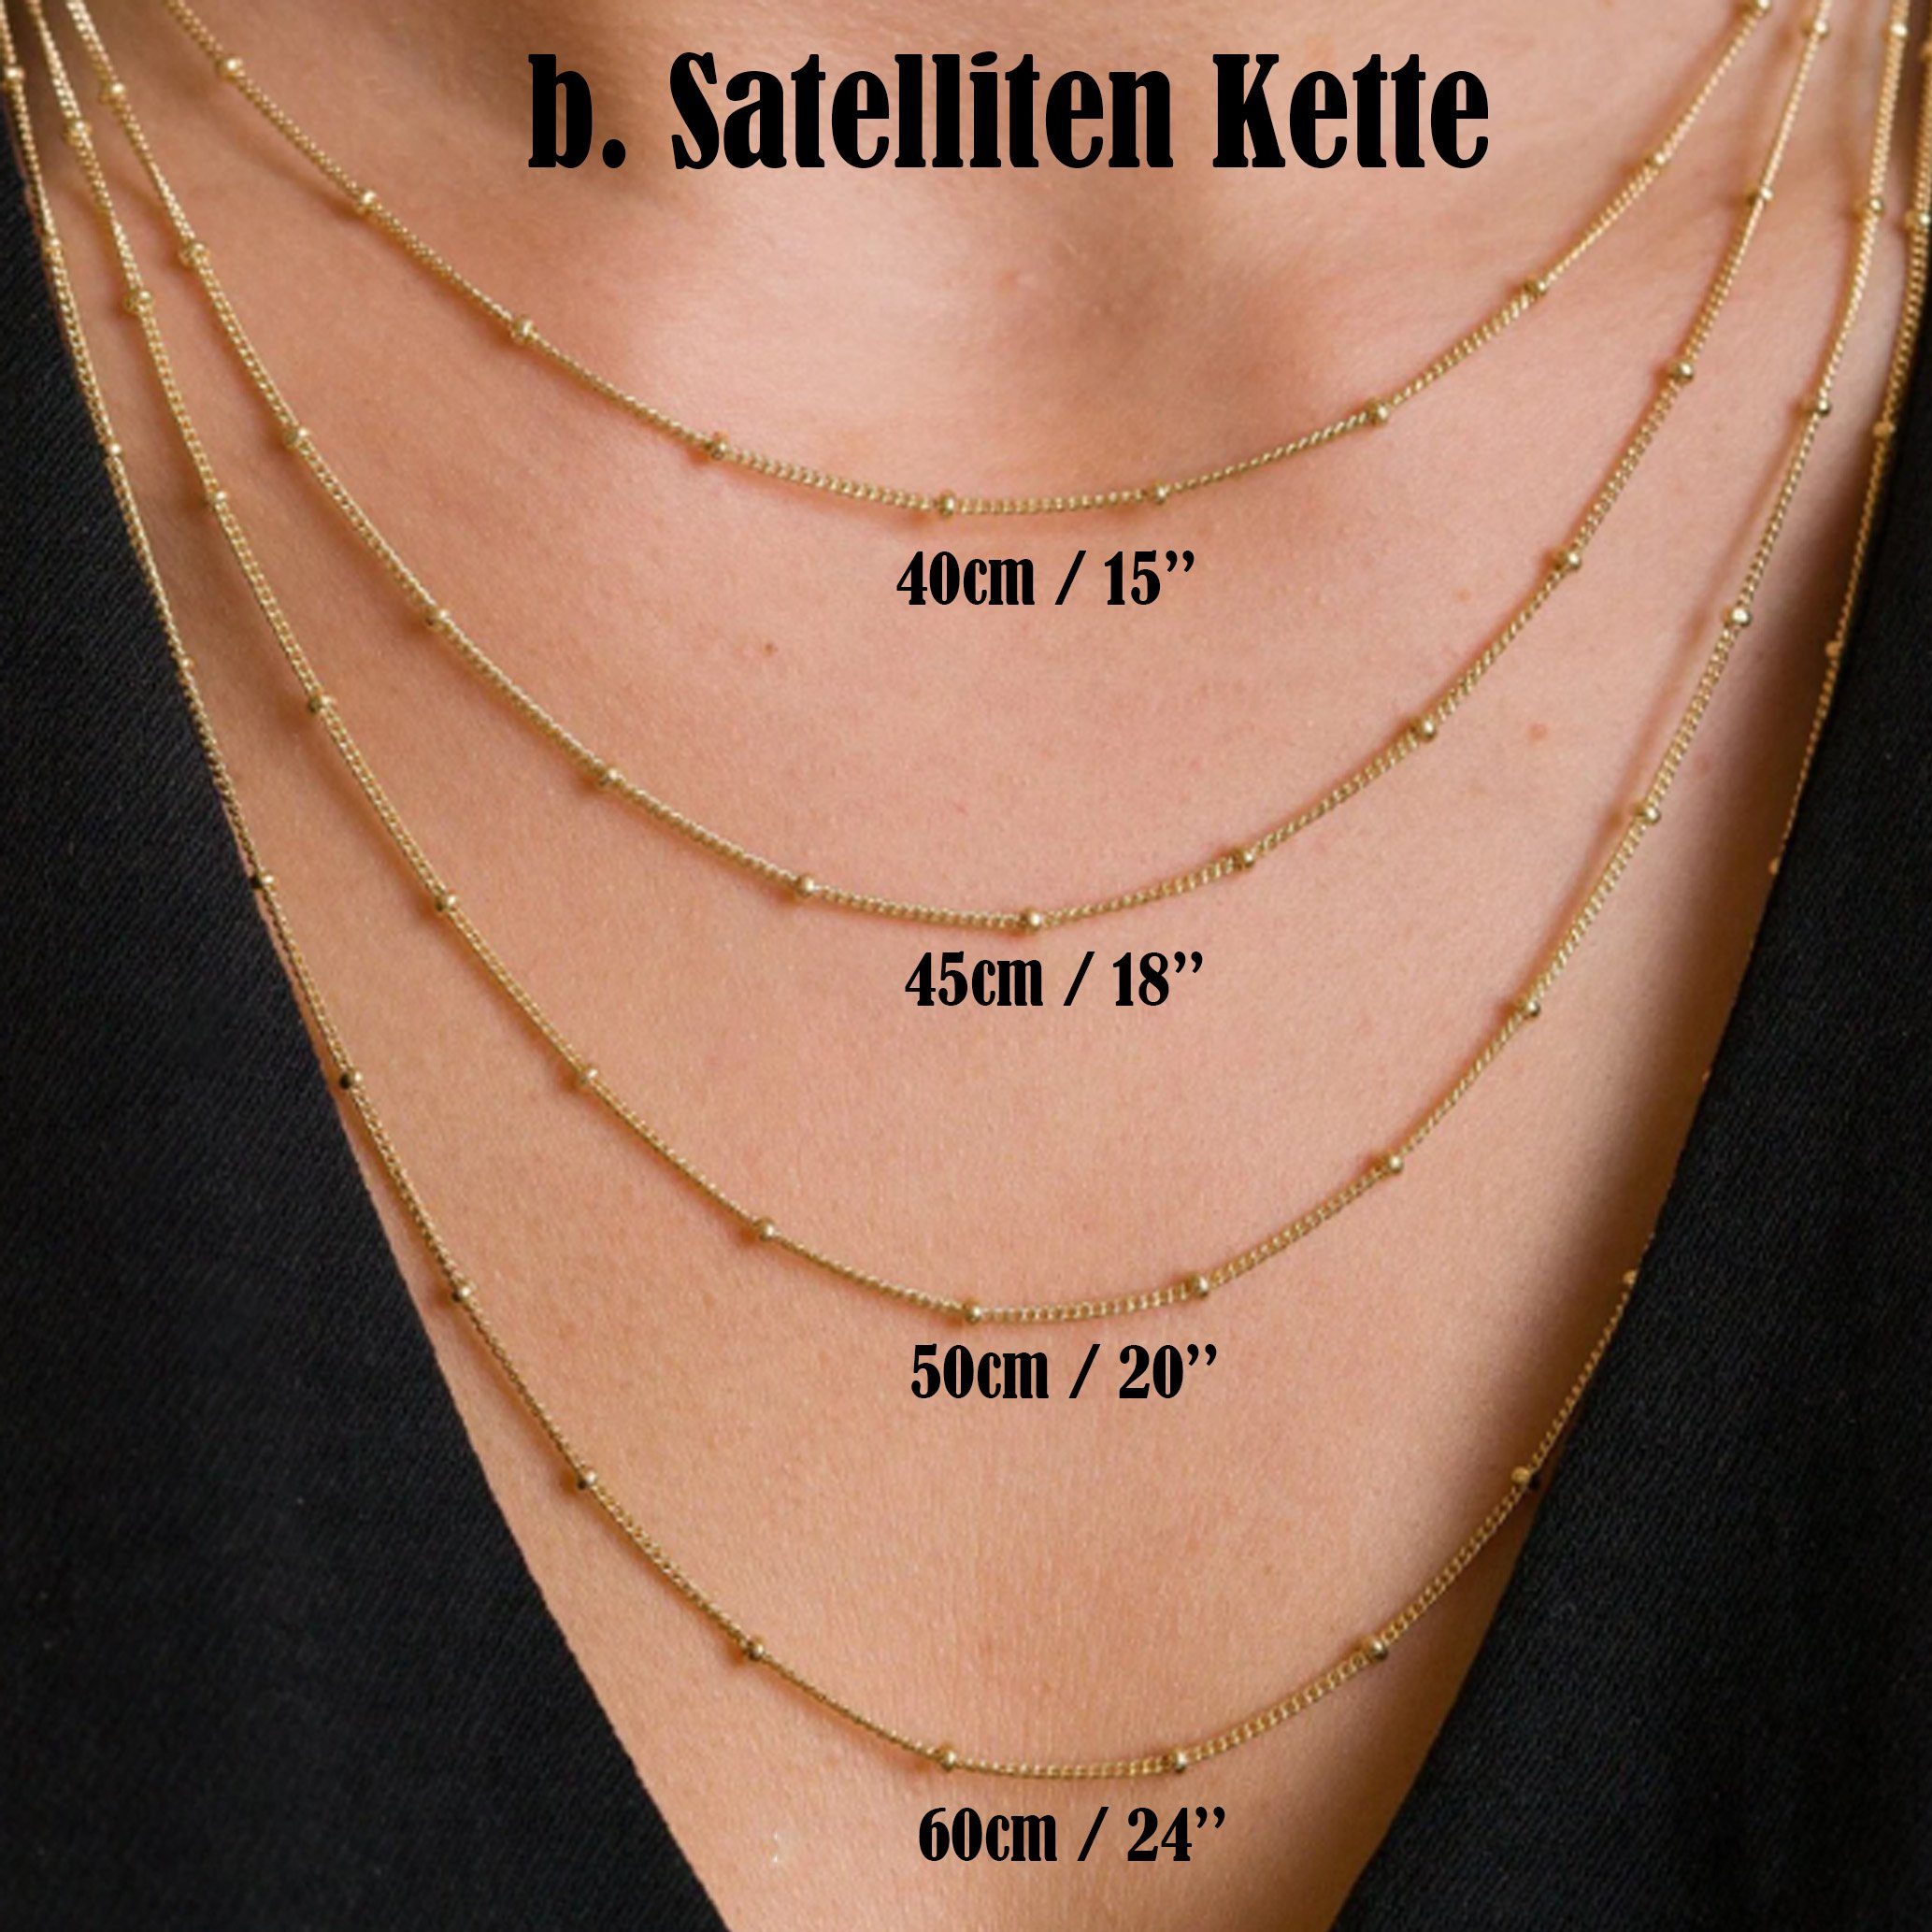 Horoskop / Halskette Kette mit Satelliten Sternzeichen Löwe b. & Anhänger filled | 18Gold Kette Anhänger Charm GOLDEN Kette